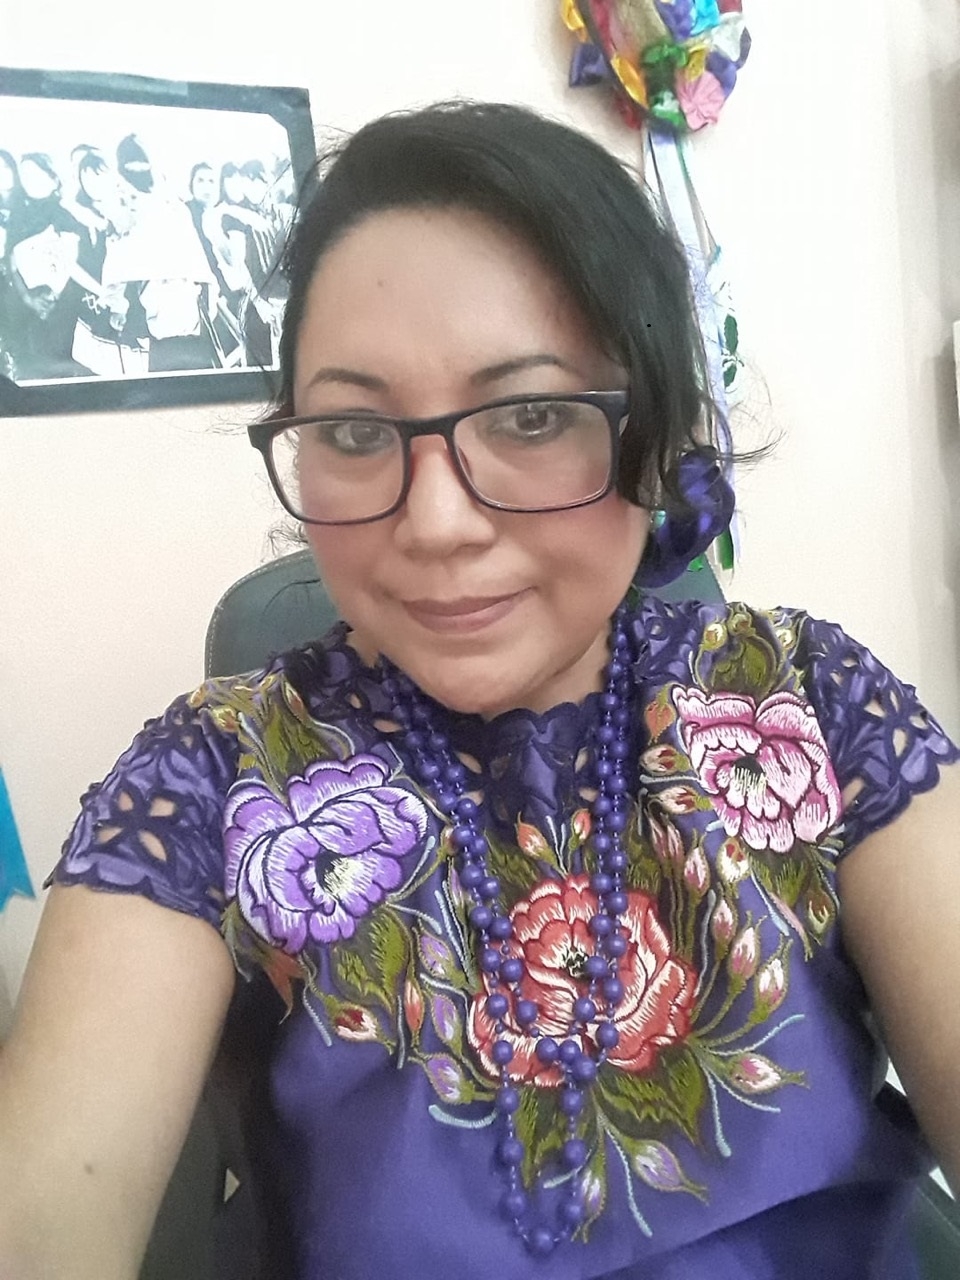 La activista maya, originaria de Felipe Carrillo Puerto, declaró que ella misma sufrió discriminación hasta por usar un Hipil